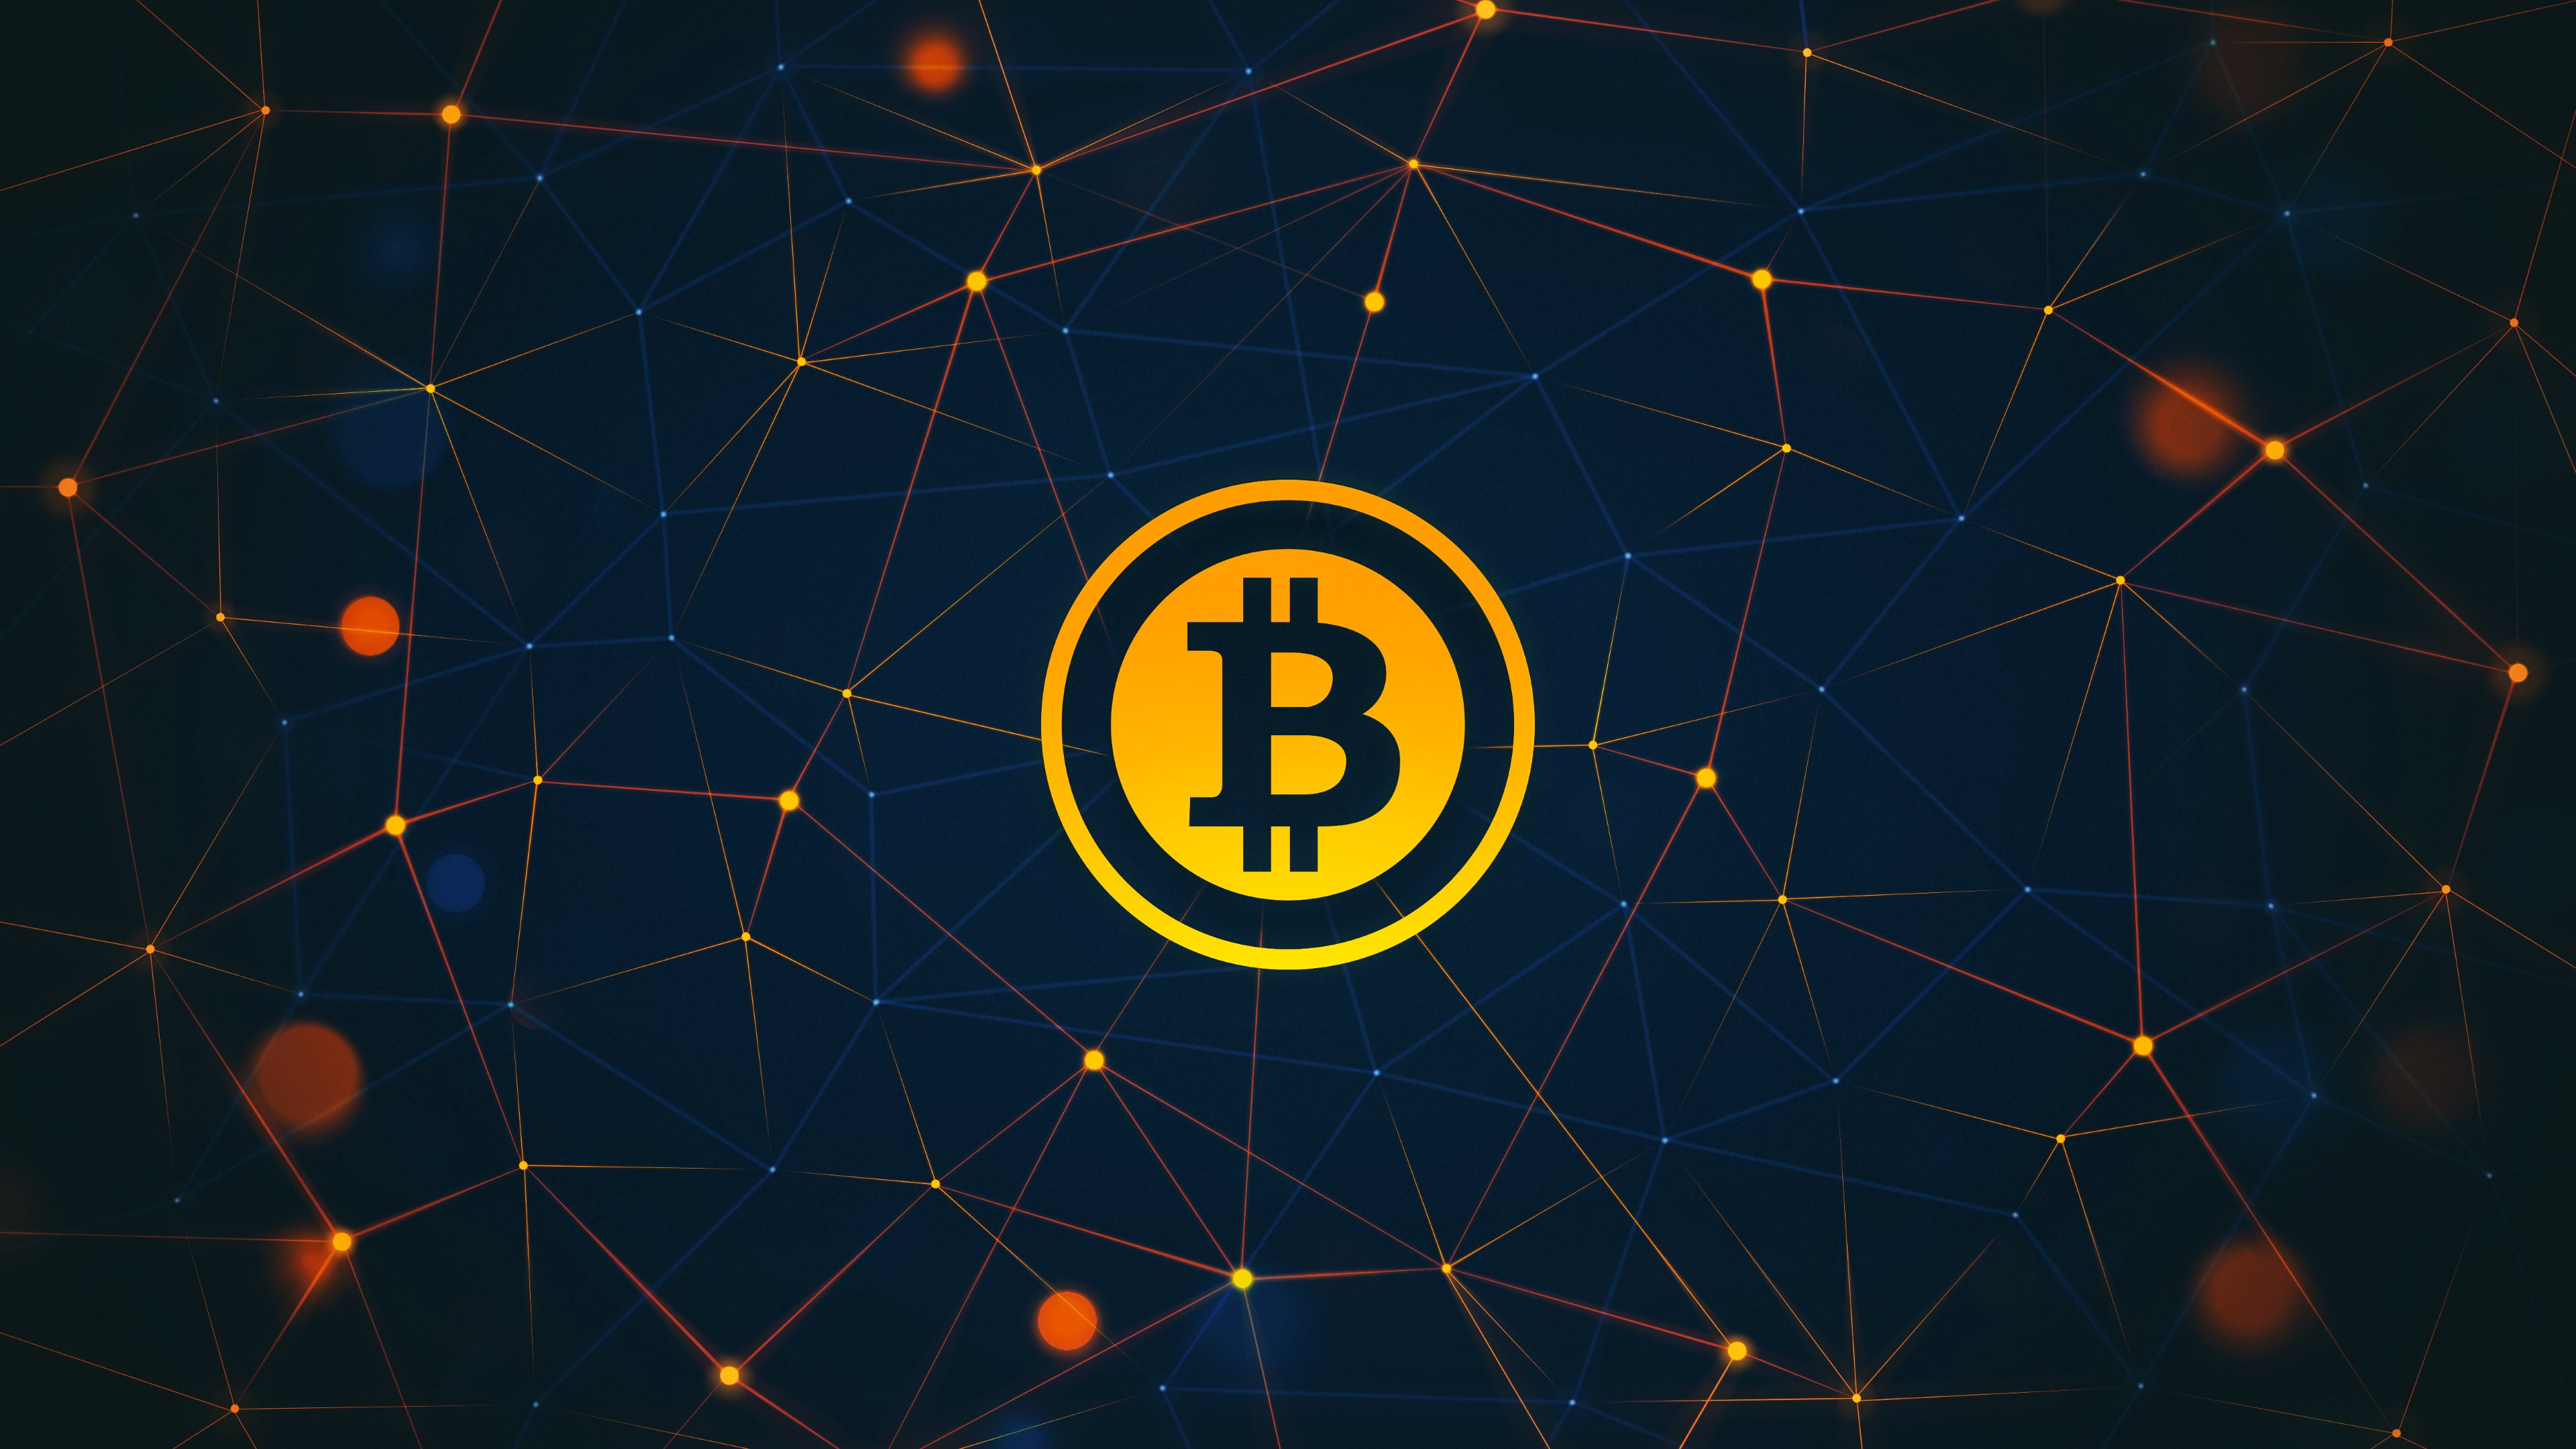 Bitcoin logo wallpaper 3840x2160